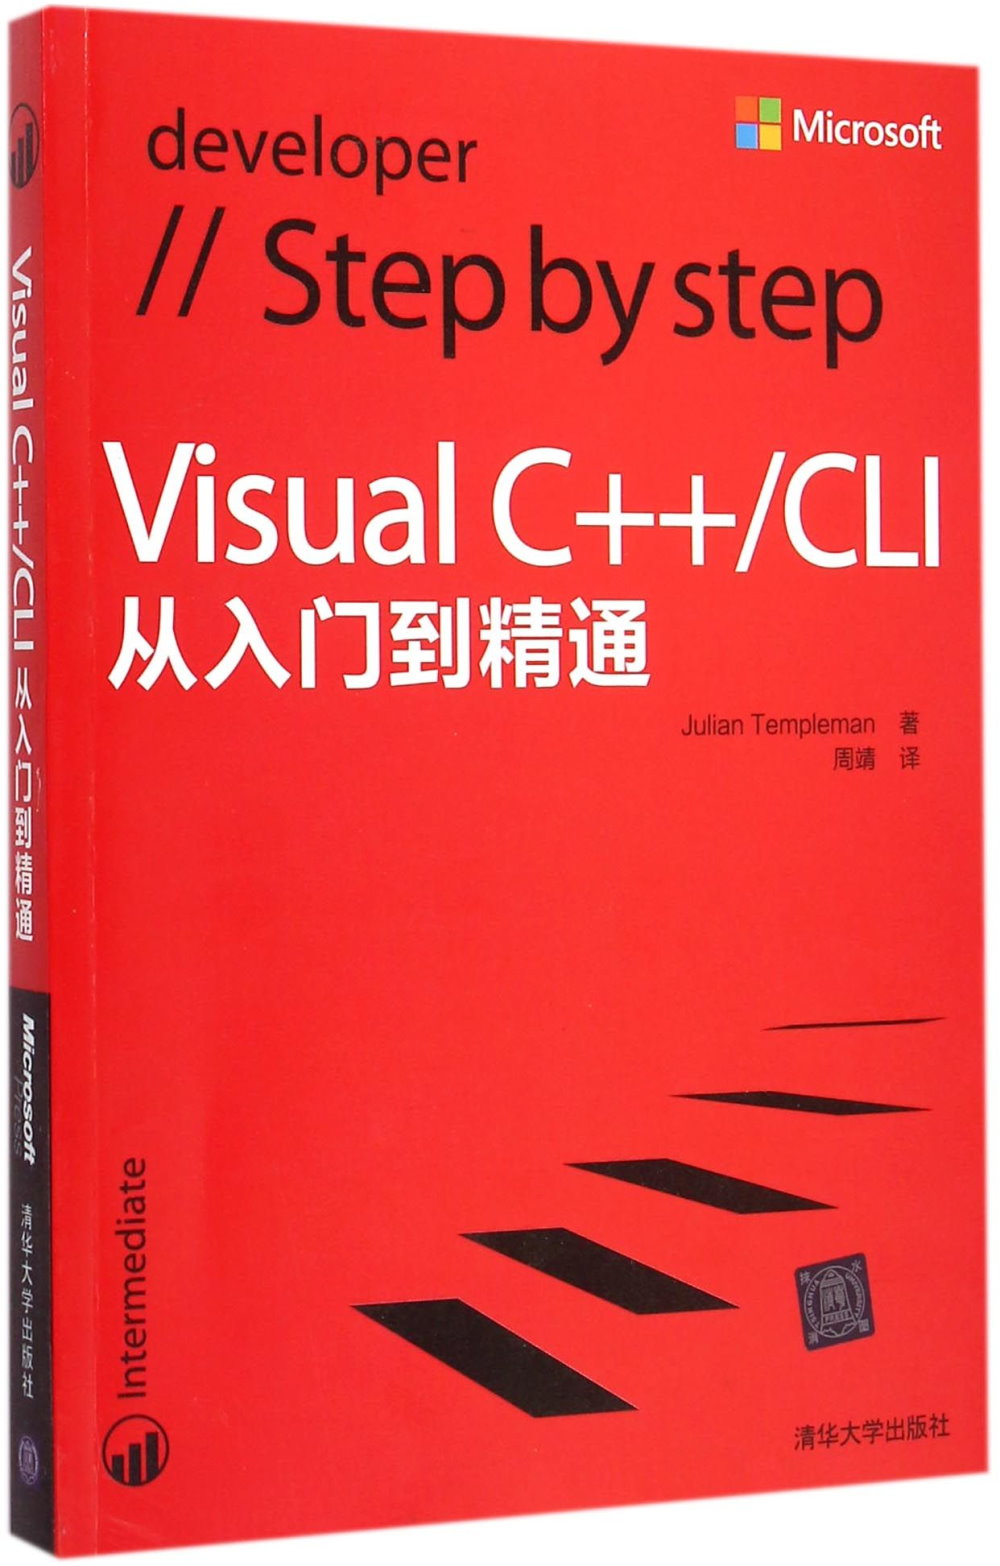 Visual C++/CLI從入門到精通